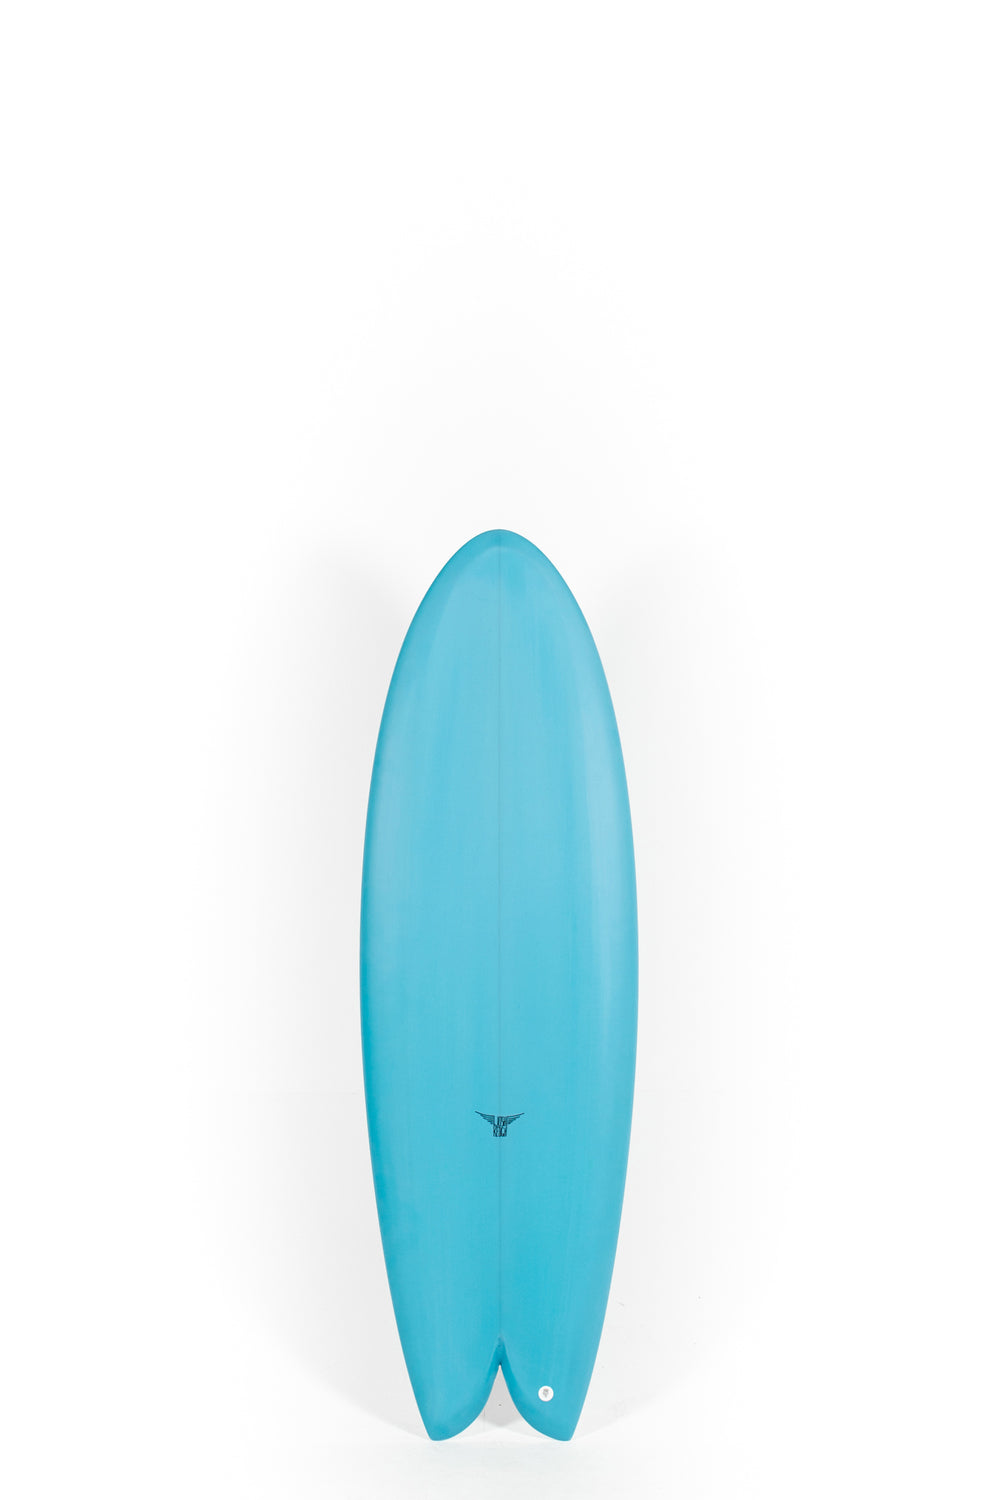 Pukas Surf Shop_Joshua Keogh Surfboard - MONAD by Joshua Keogh - 5'8